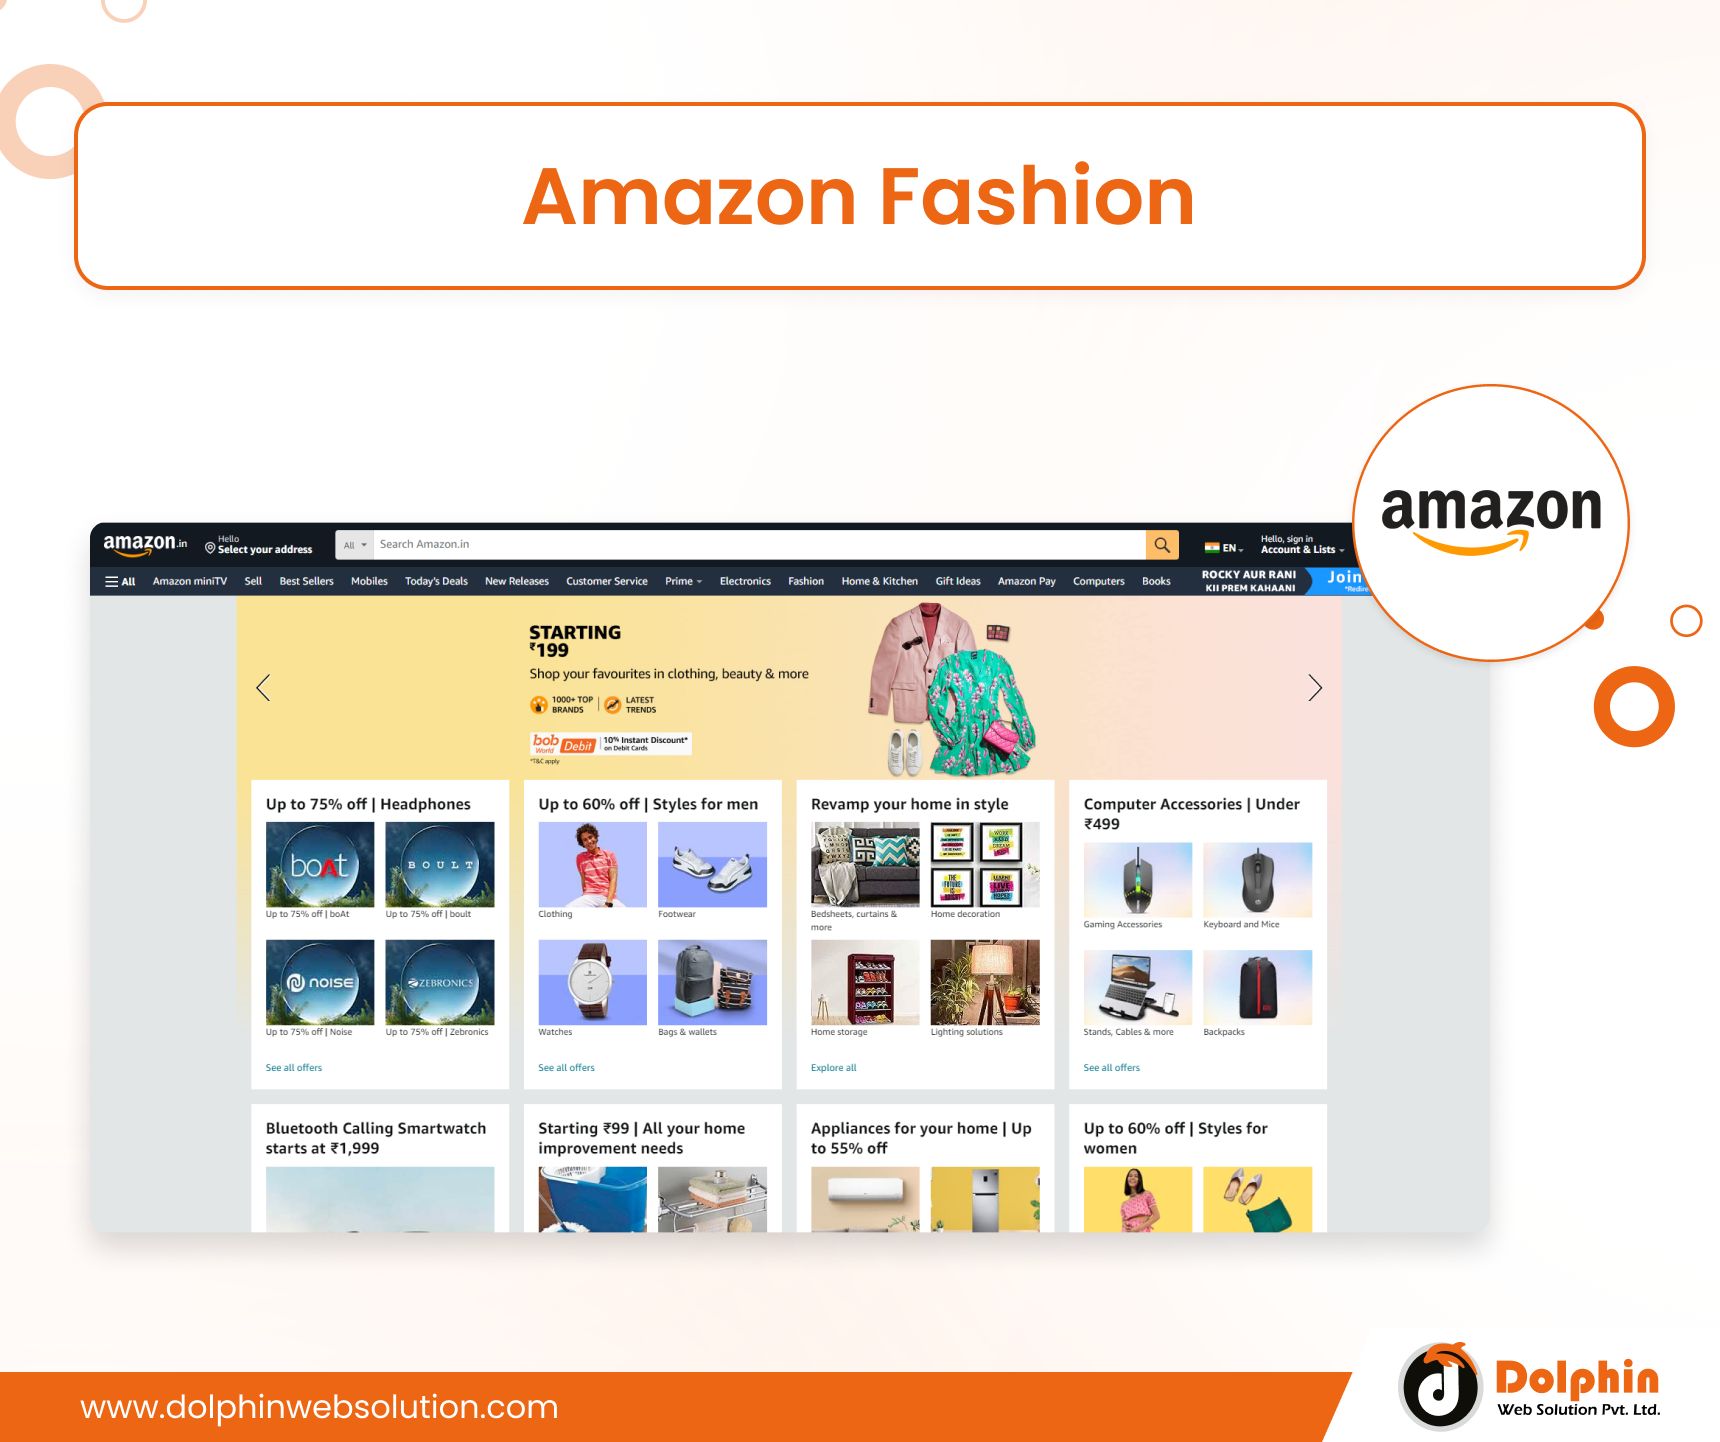  Amazon Fashion